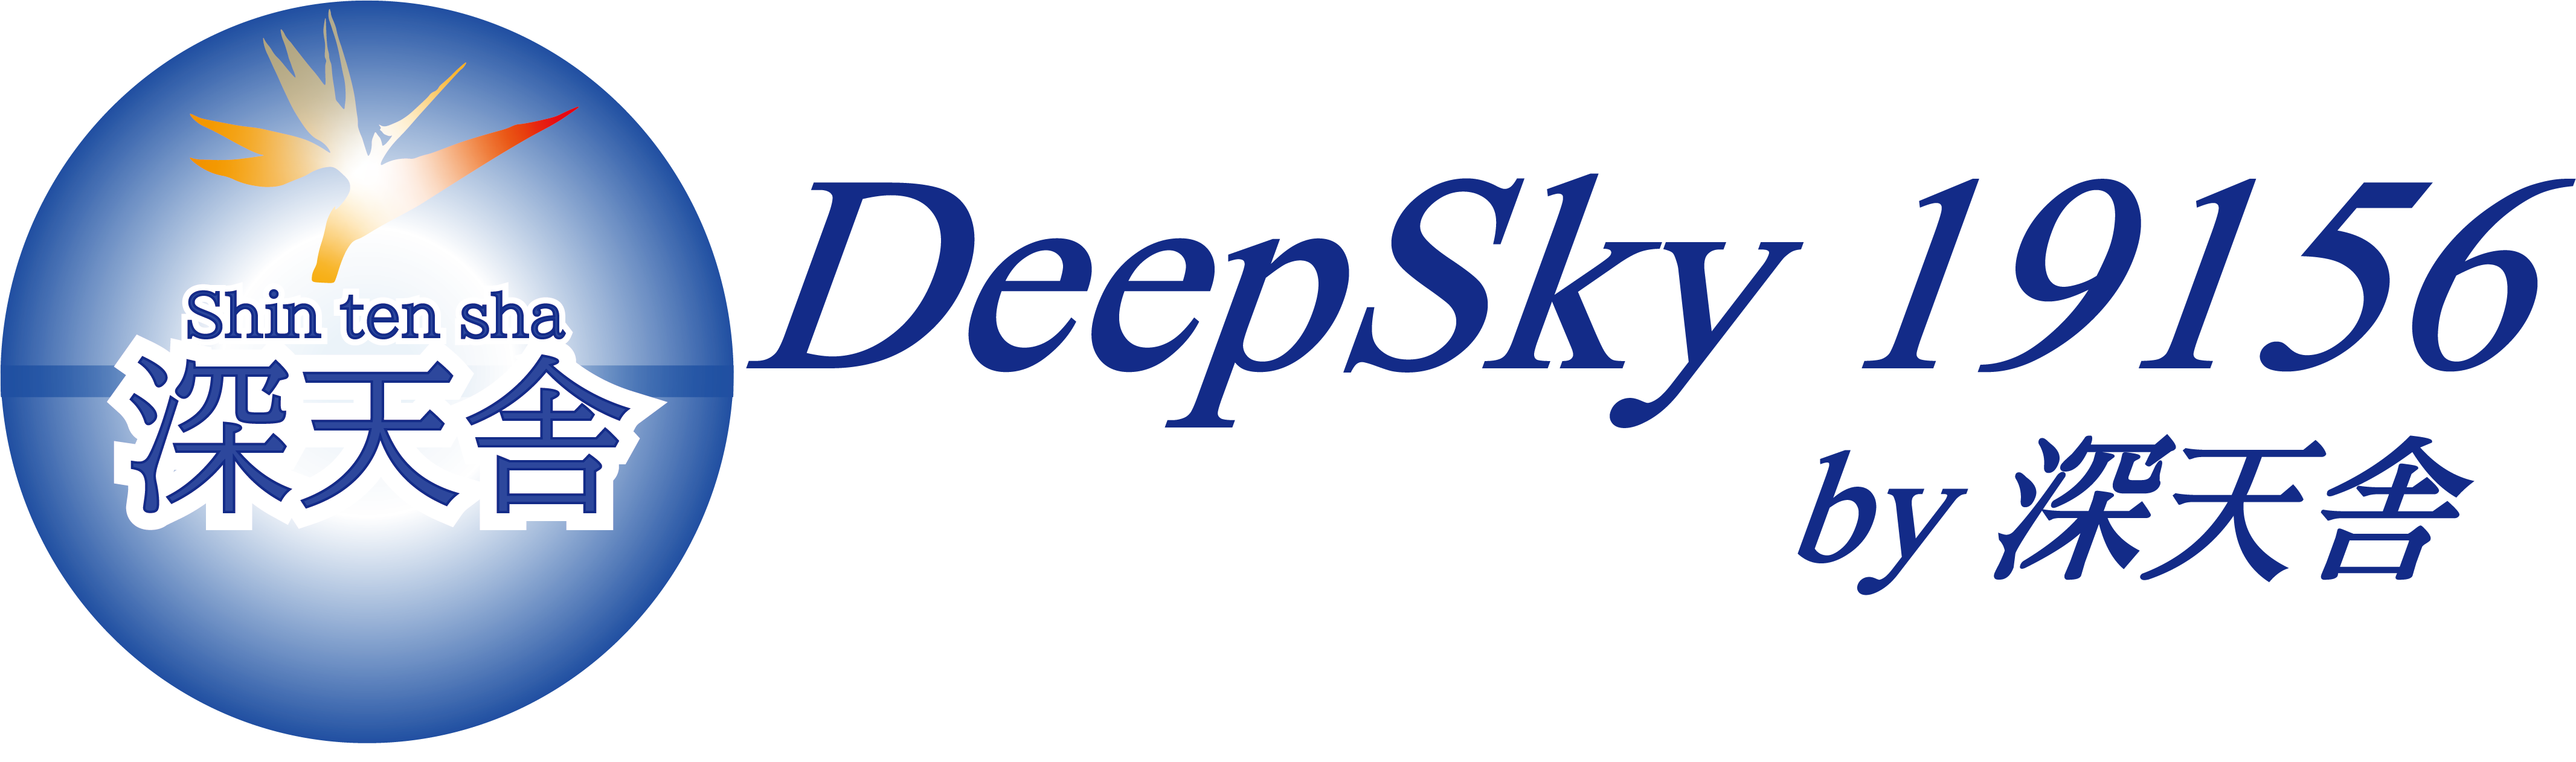 深天舎ブログ「Deep Sky 19156」